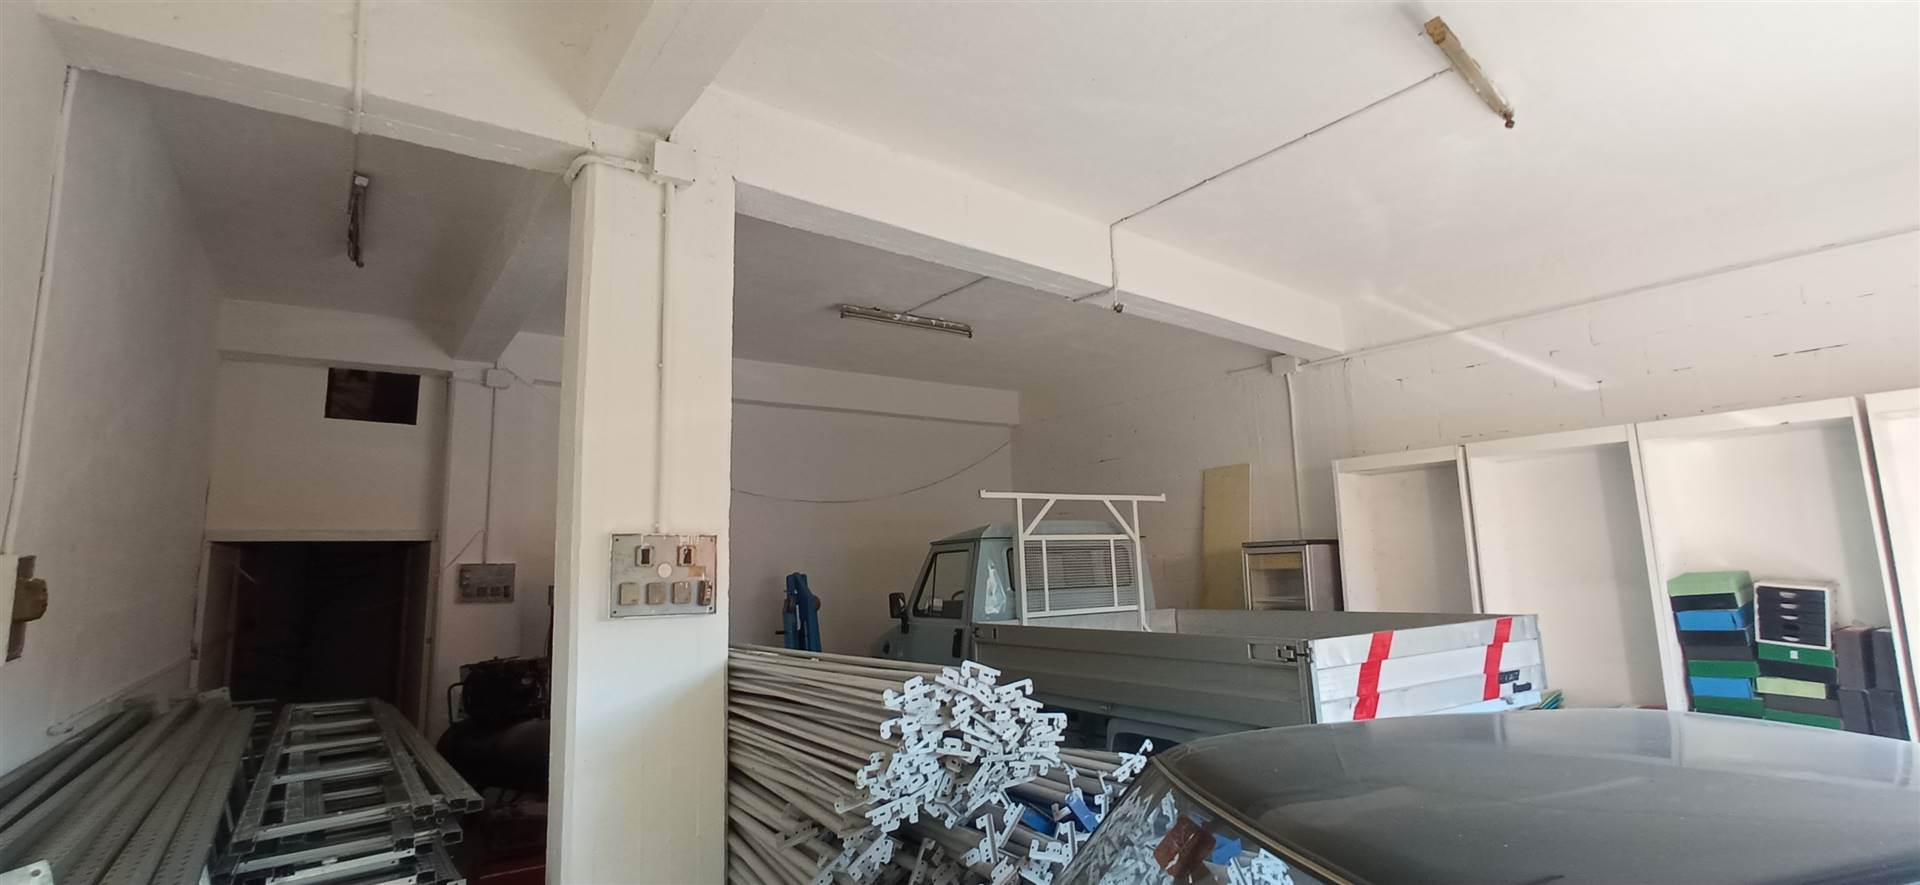 Garage / Posto auto in Piazzetta Cavour in zona Colombo a Avellino